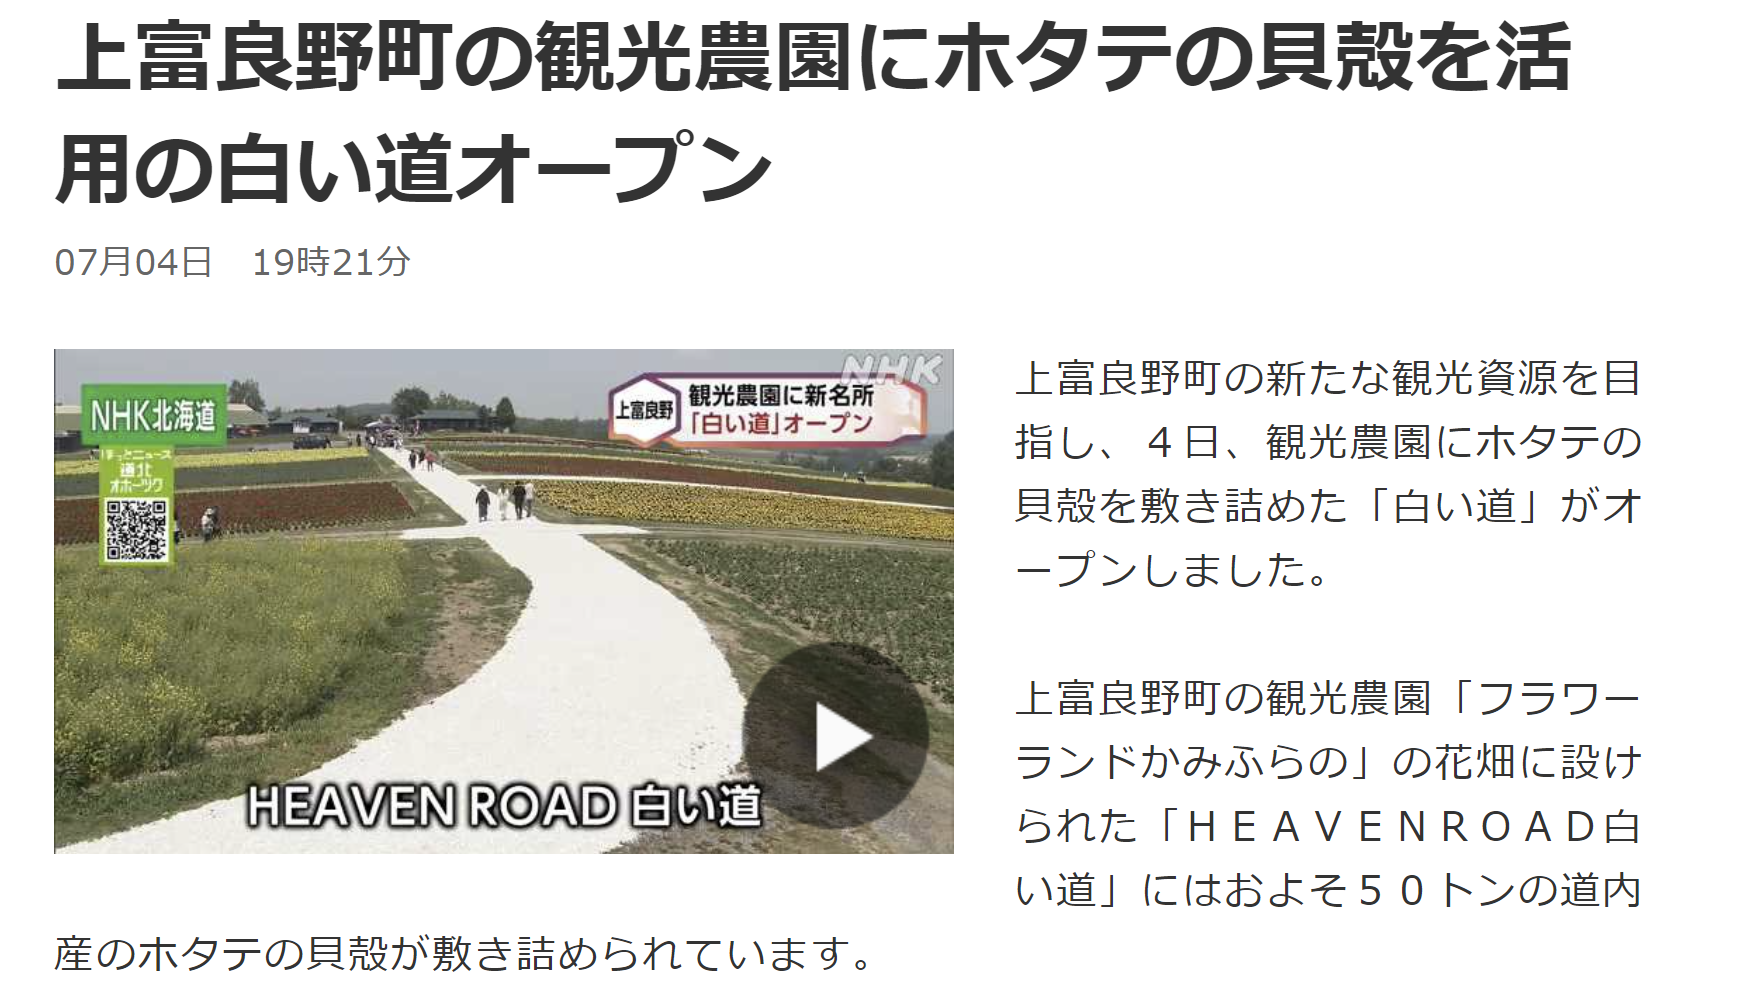 【メディア】NHK 北海道 NEWS WEBに掲載されました